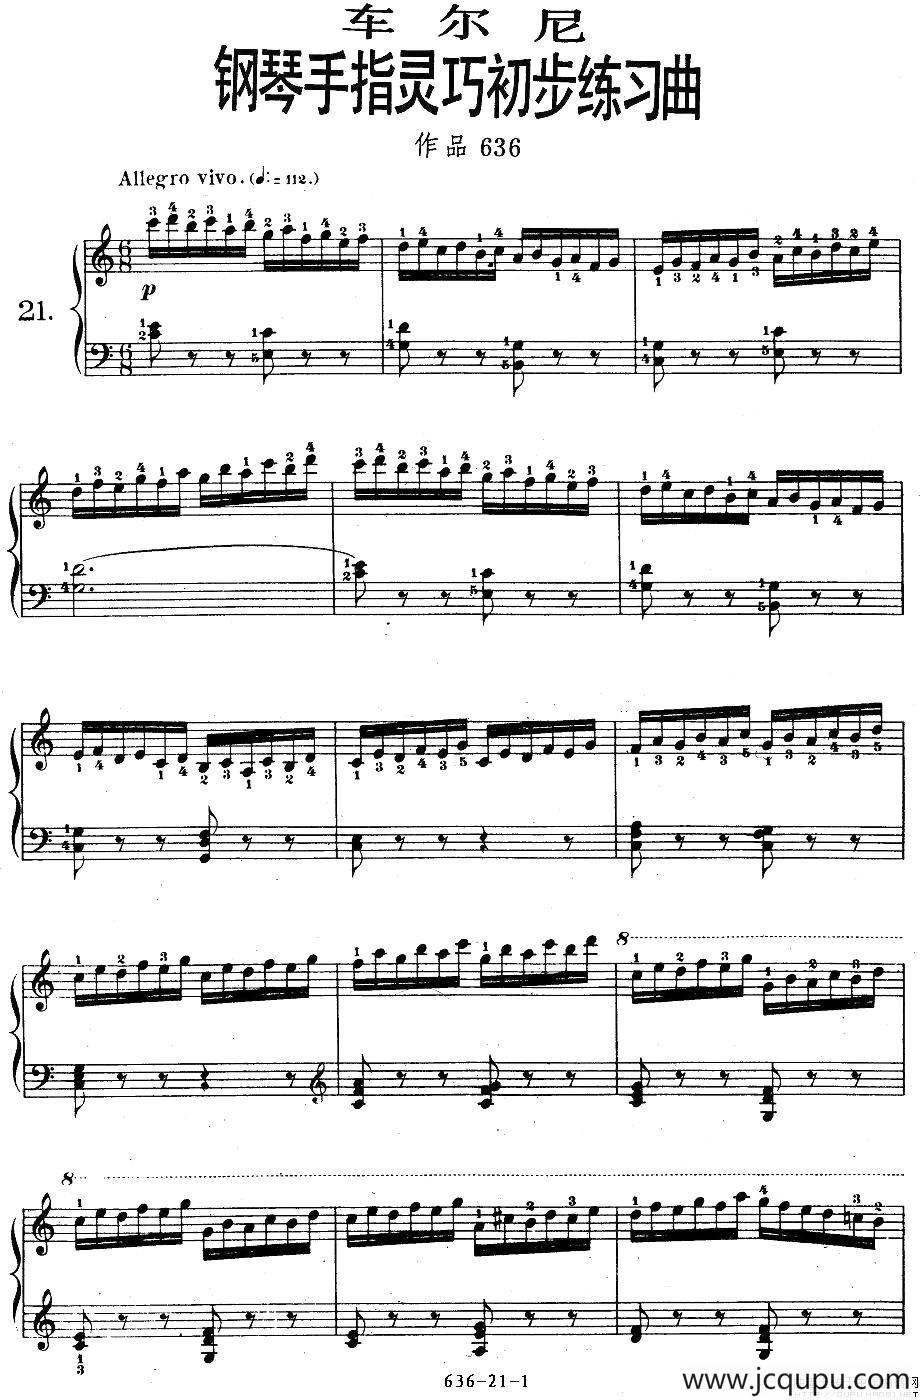 《车尔尼钢琴手指灵巧初步练习曲》op636